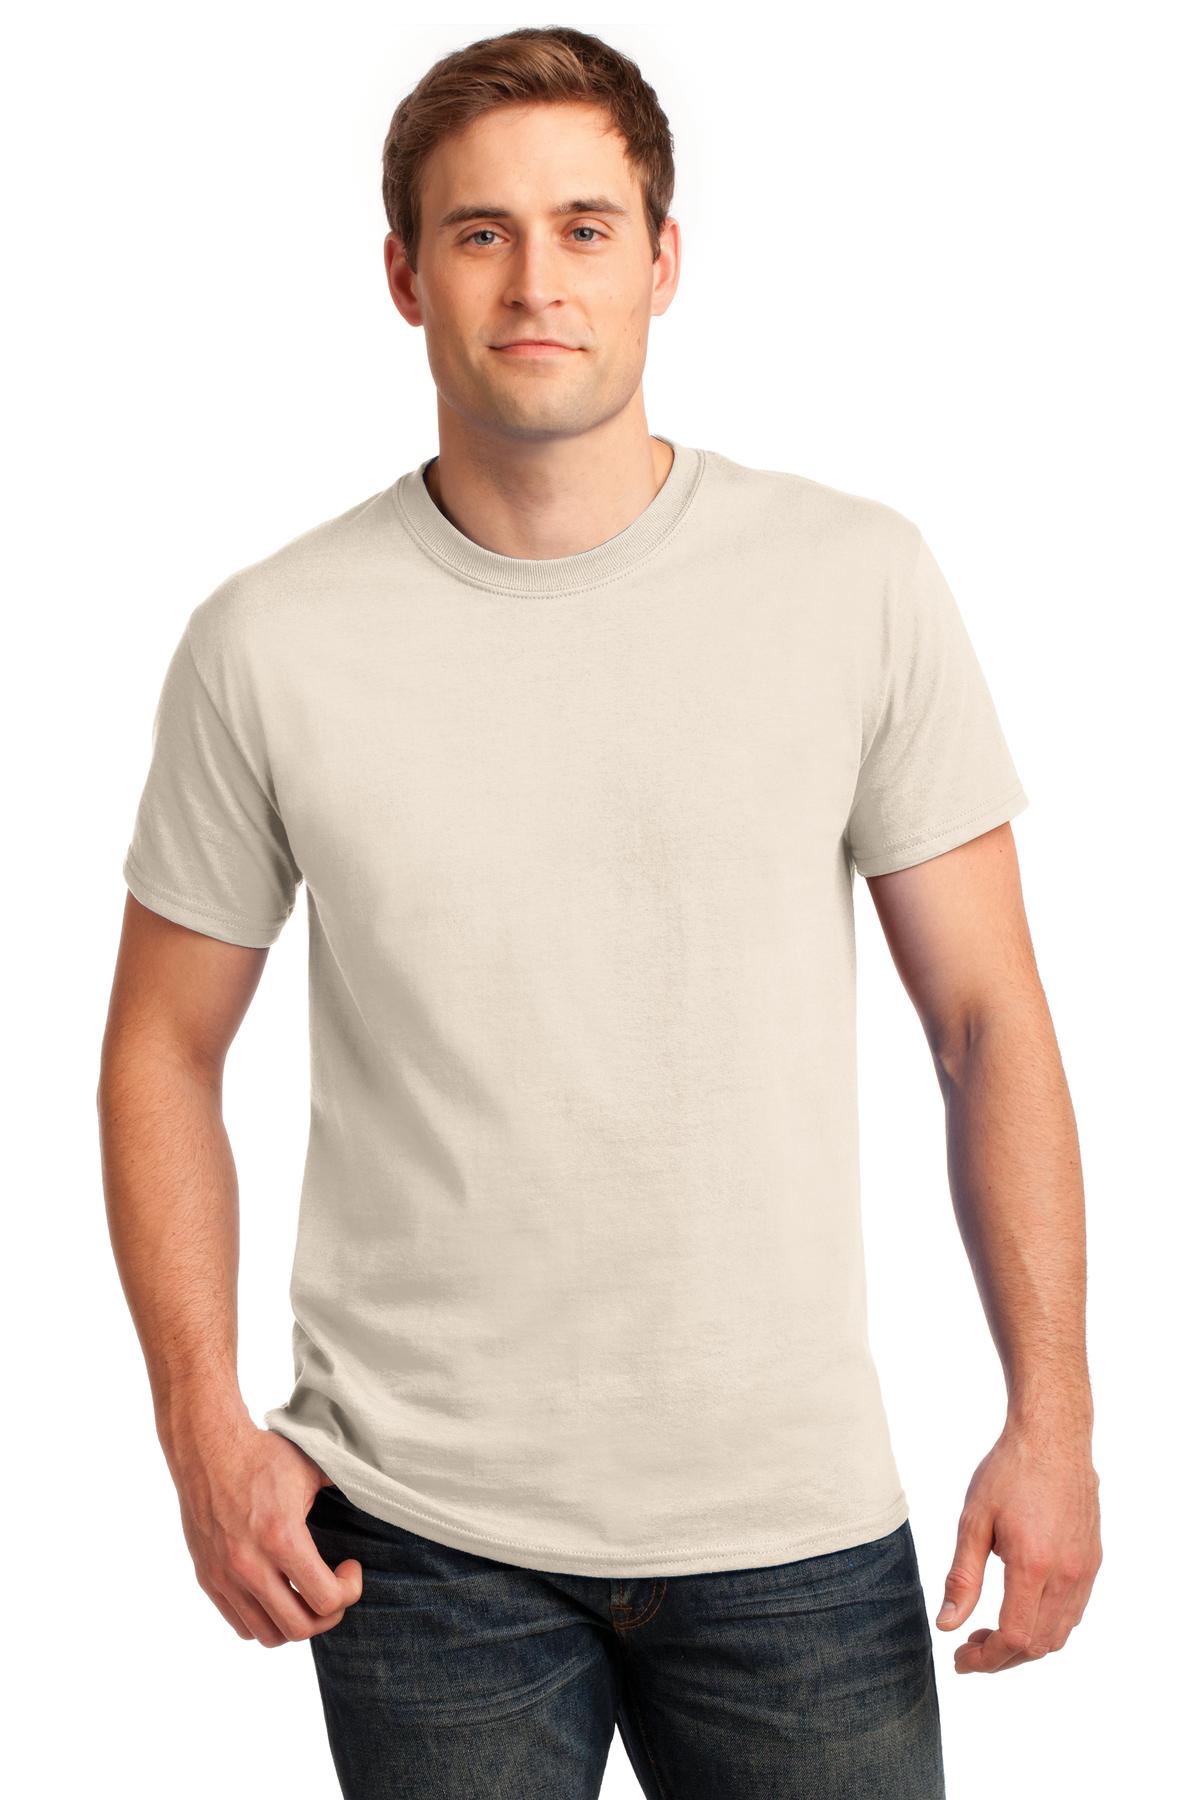 G200 – Gildan – Ultra Cotton 100 Cotton T-Shirt – Safari Sun